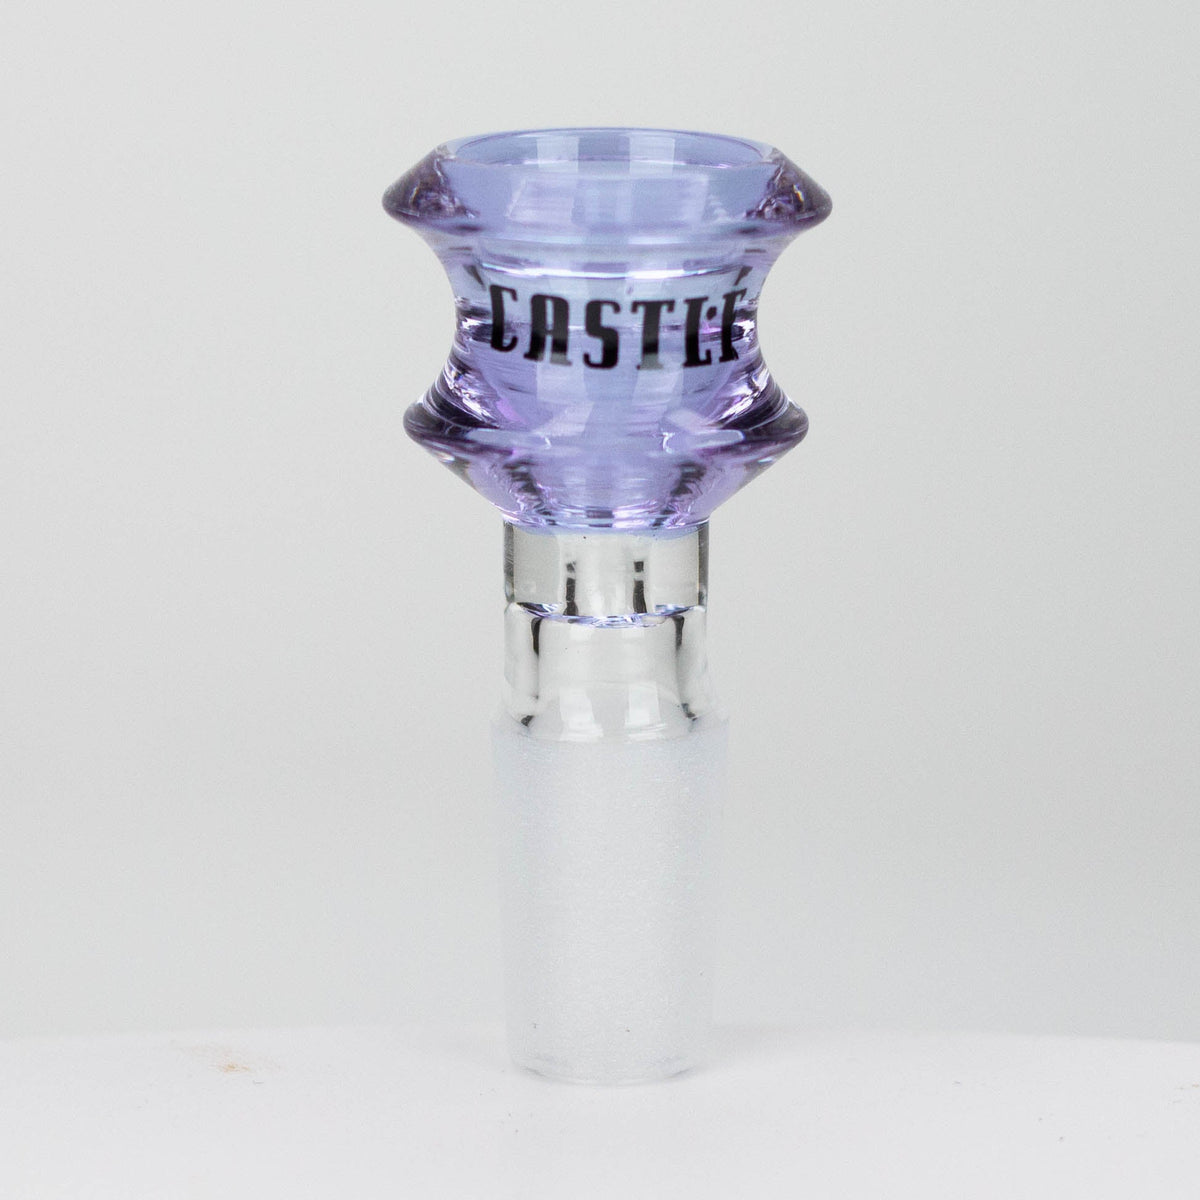 Castle Glassworks 14mm Disk glass bong Bowl